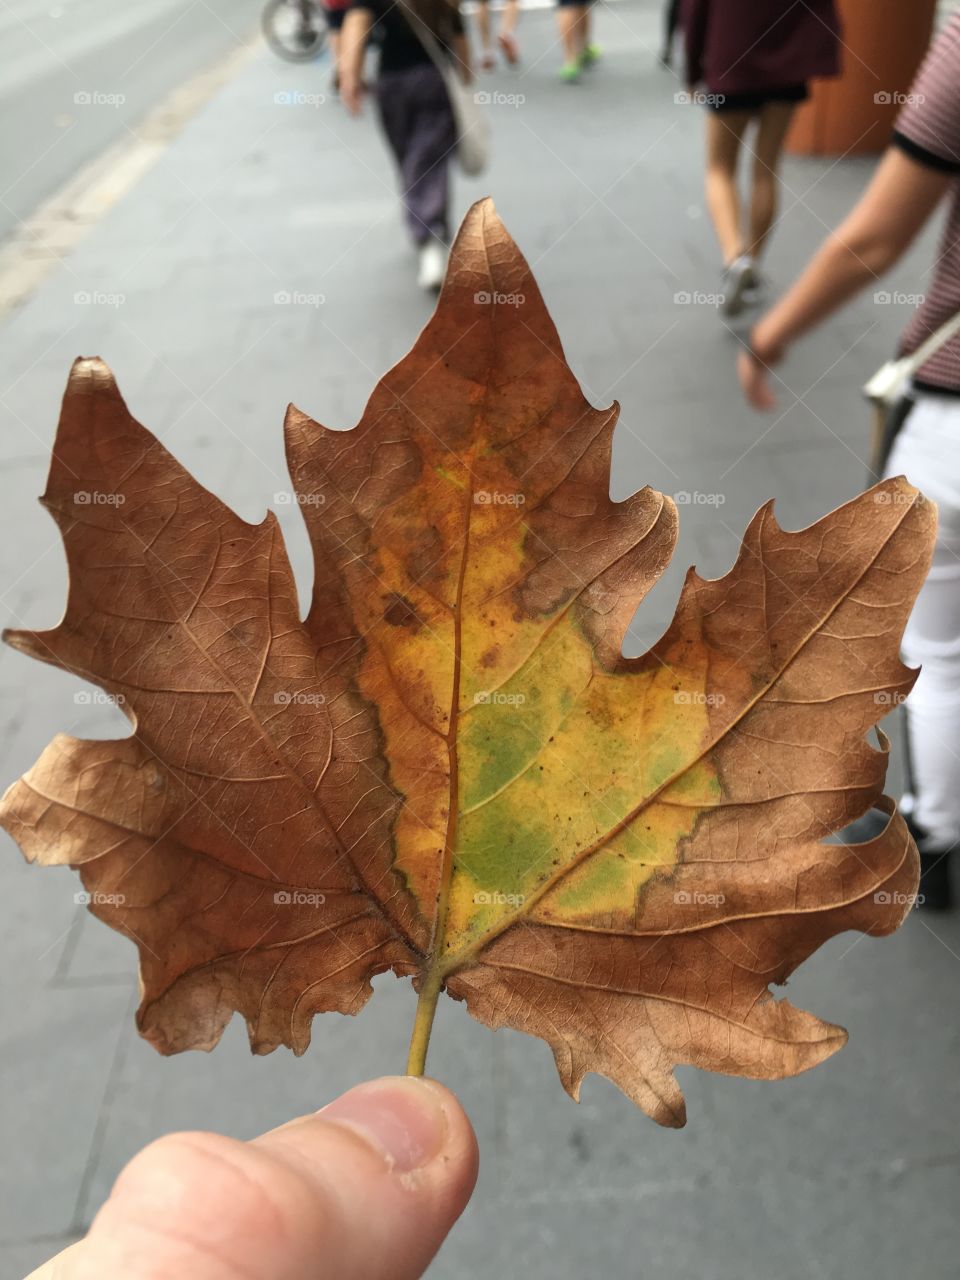 City leaf